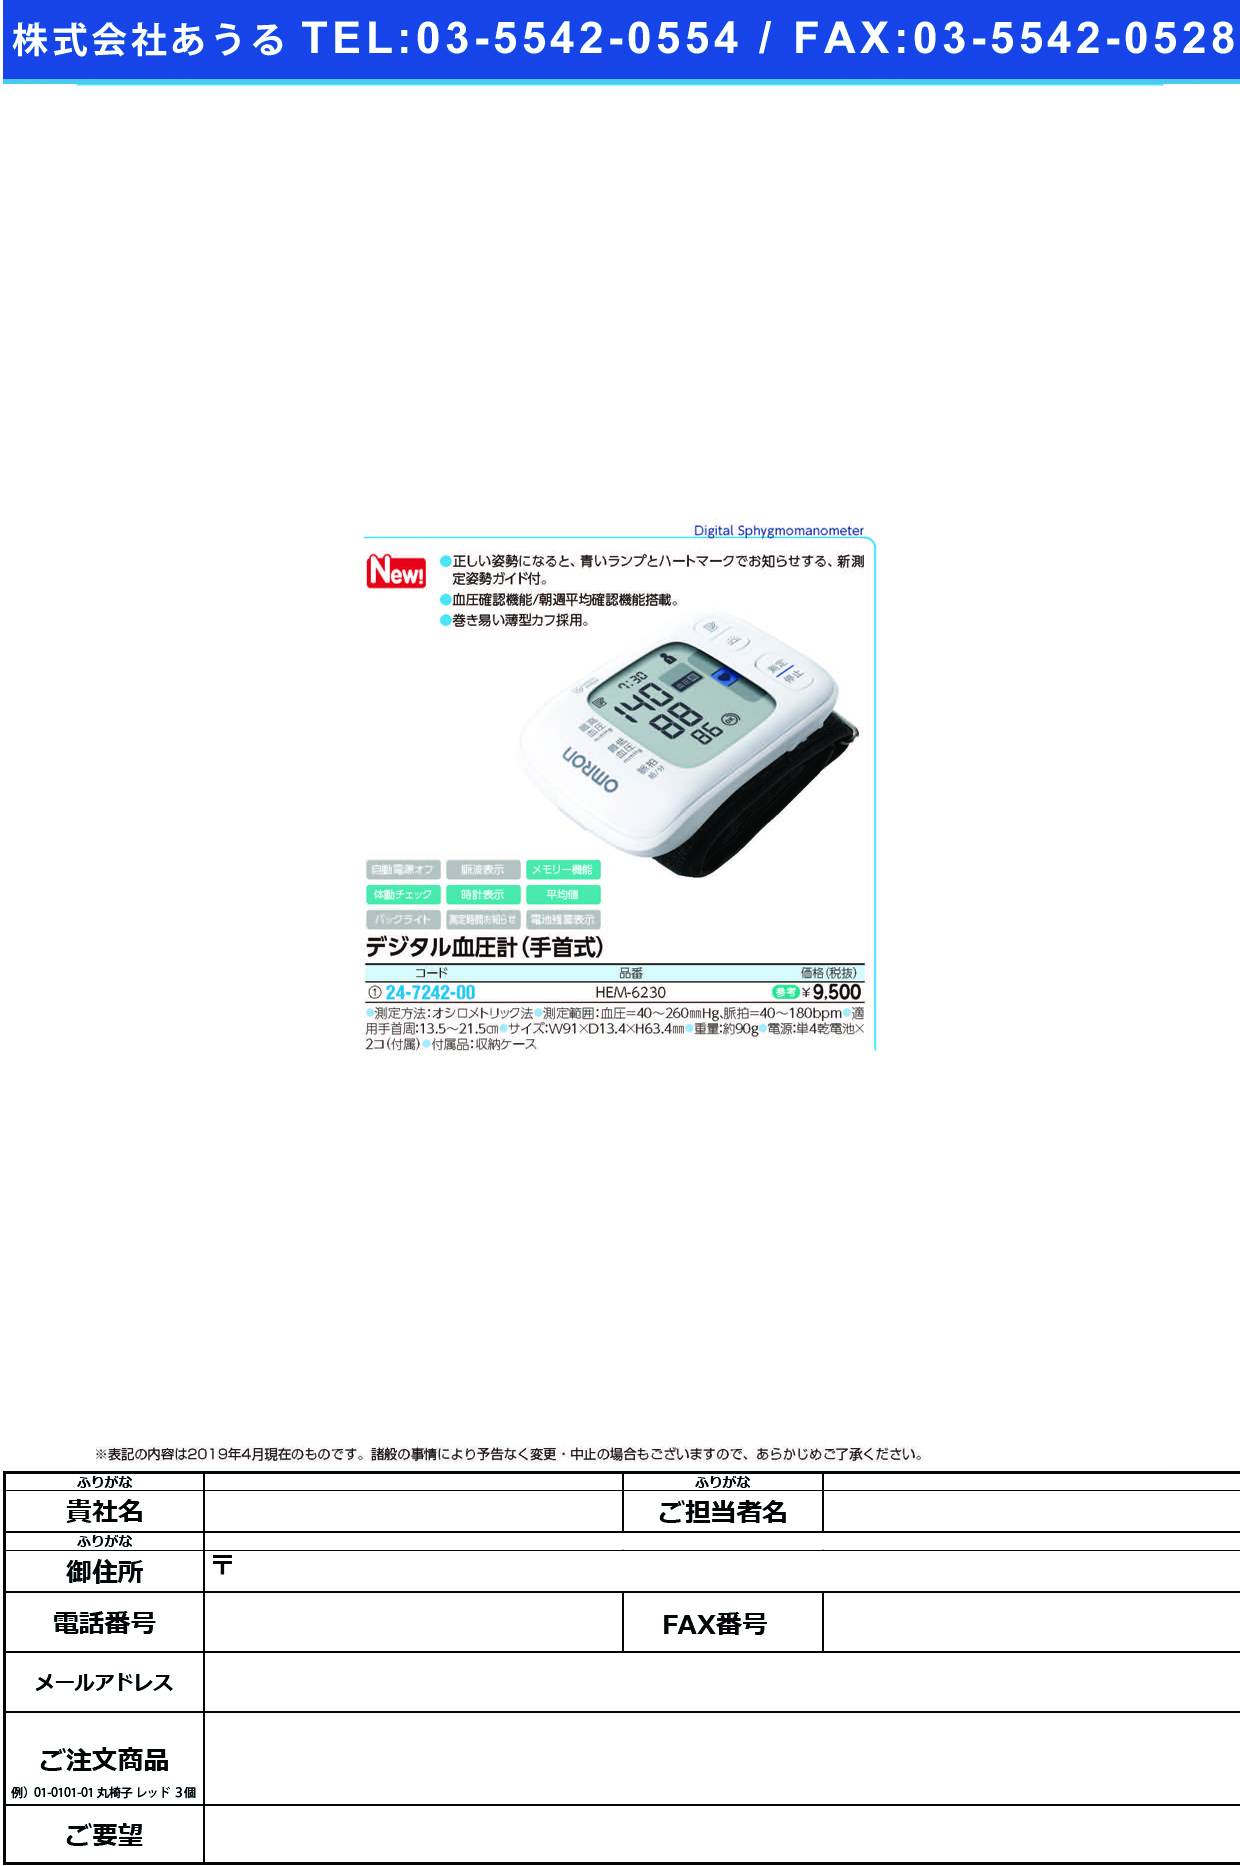 (24-7242-00)オムロン手首式血圧計HEM-6230 ｵﾑﾛﾝﾃｸﾋﾞｼｷｹﾂｱﾂｹｲ(オムロンヘルスケア)【1台単位】【2019年カタログ商品】